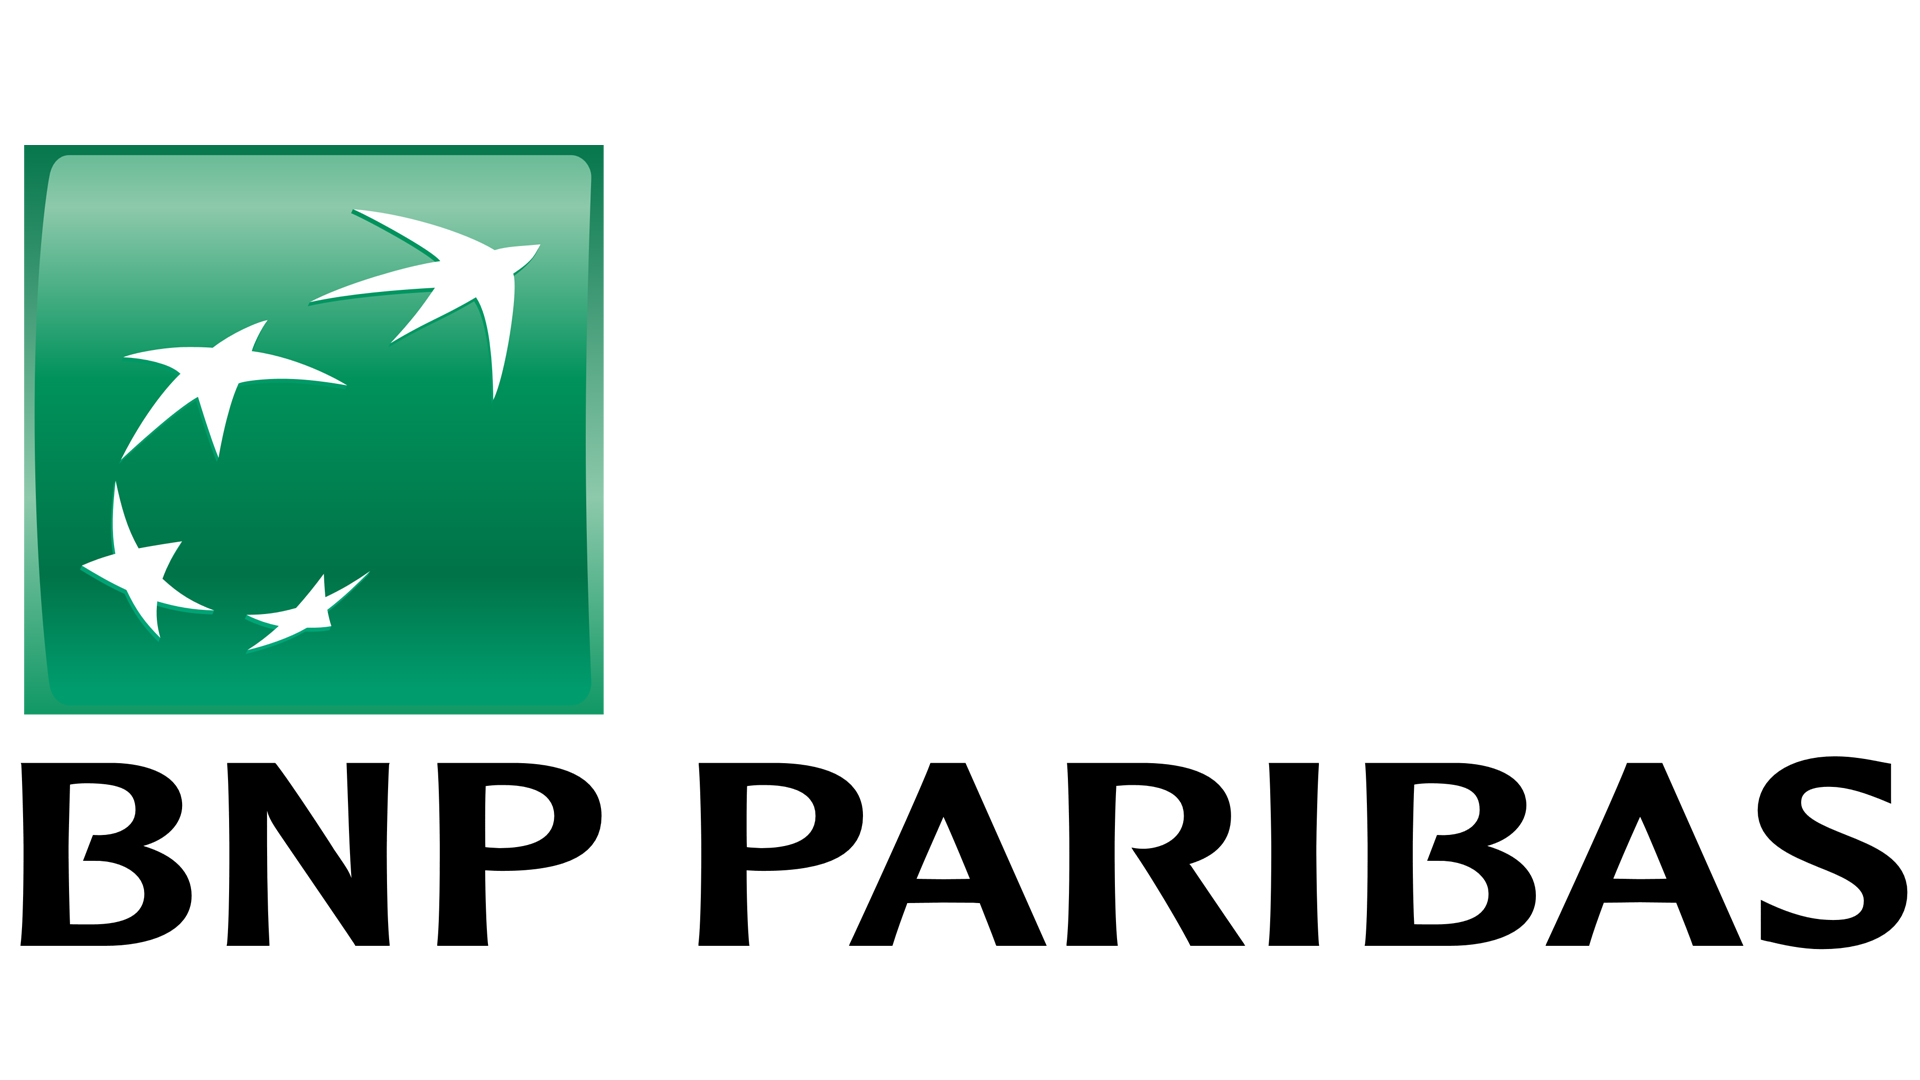 BNP Paribas (référencement)